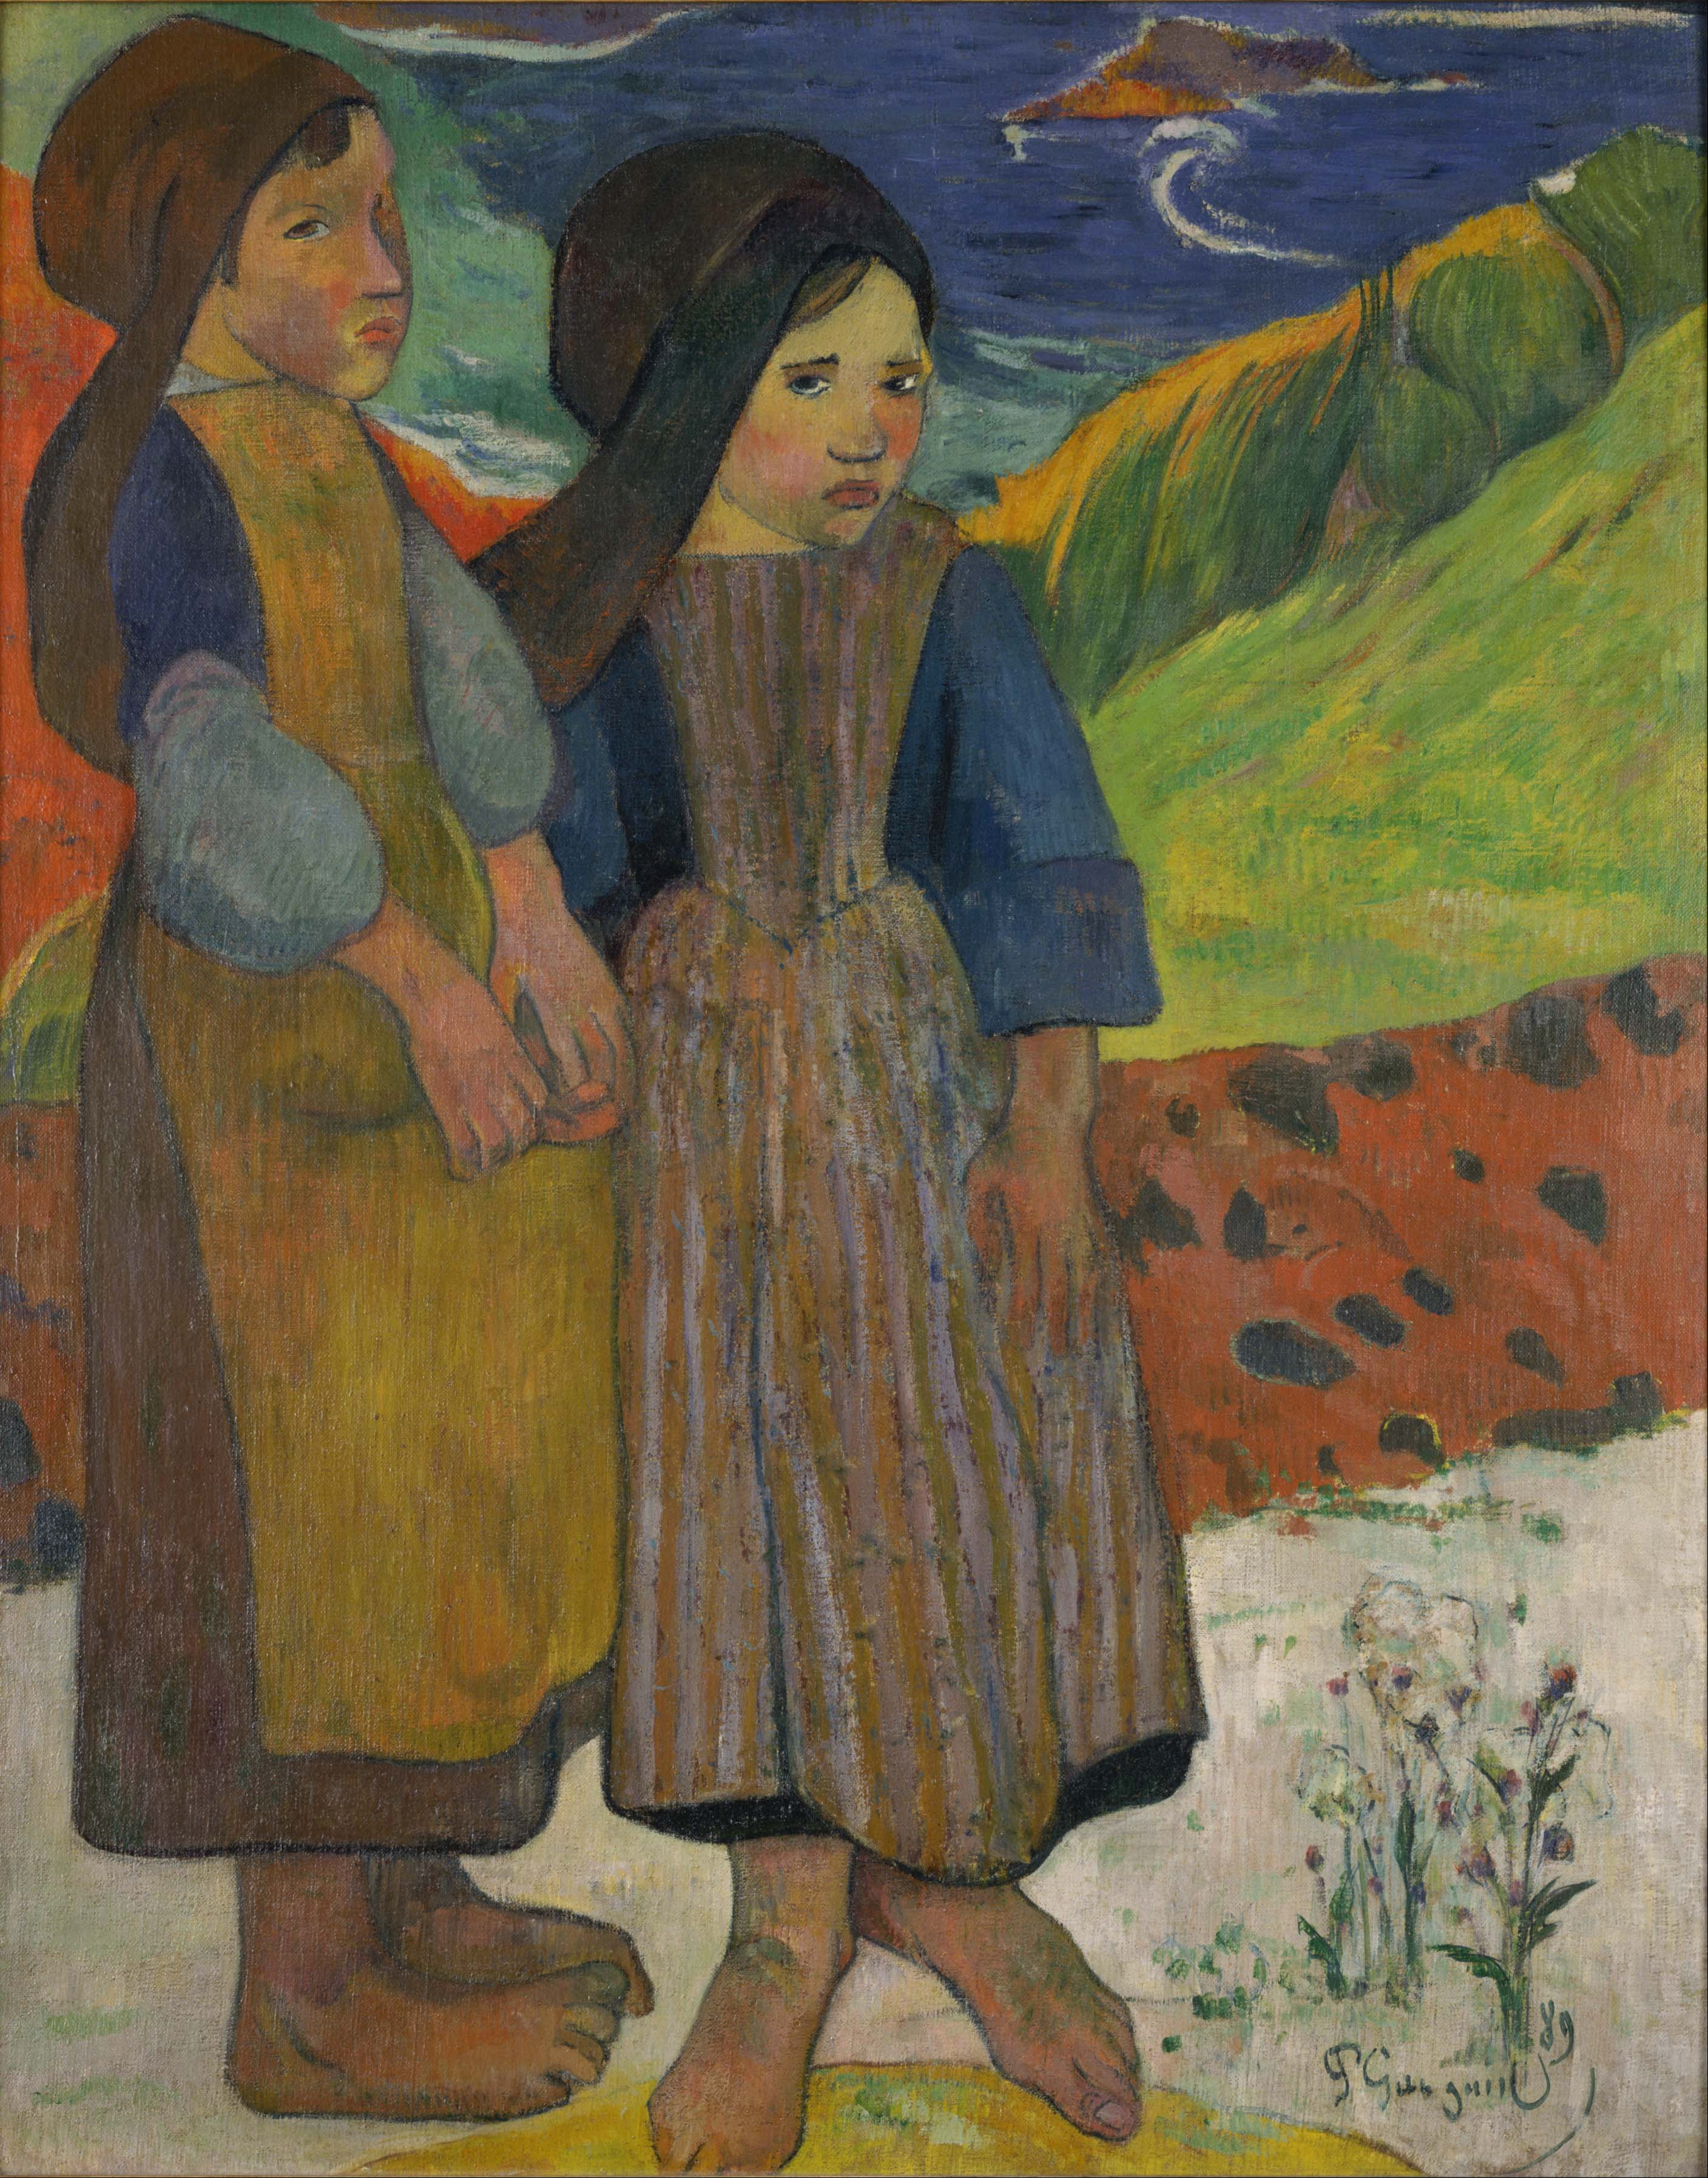 Două fete bretone la malul mării by Paul Gauguin - 1889 - 73.6 x 92.5 cm 